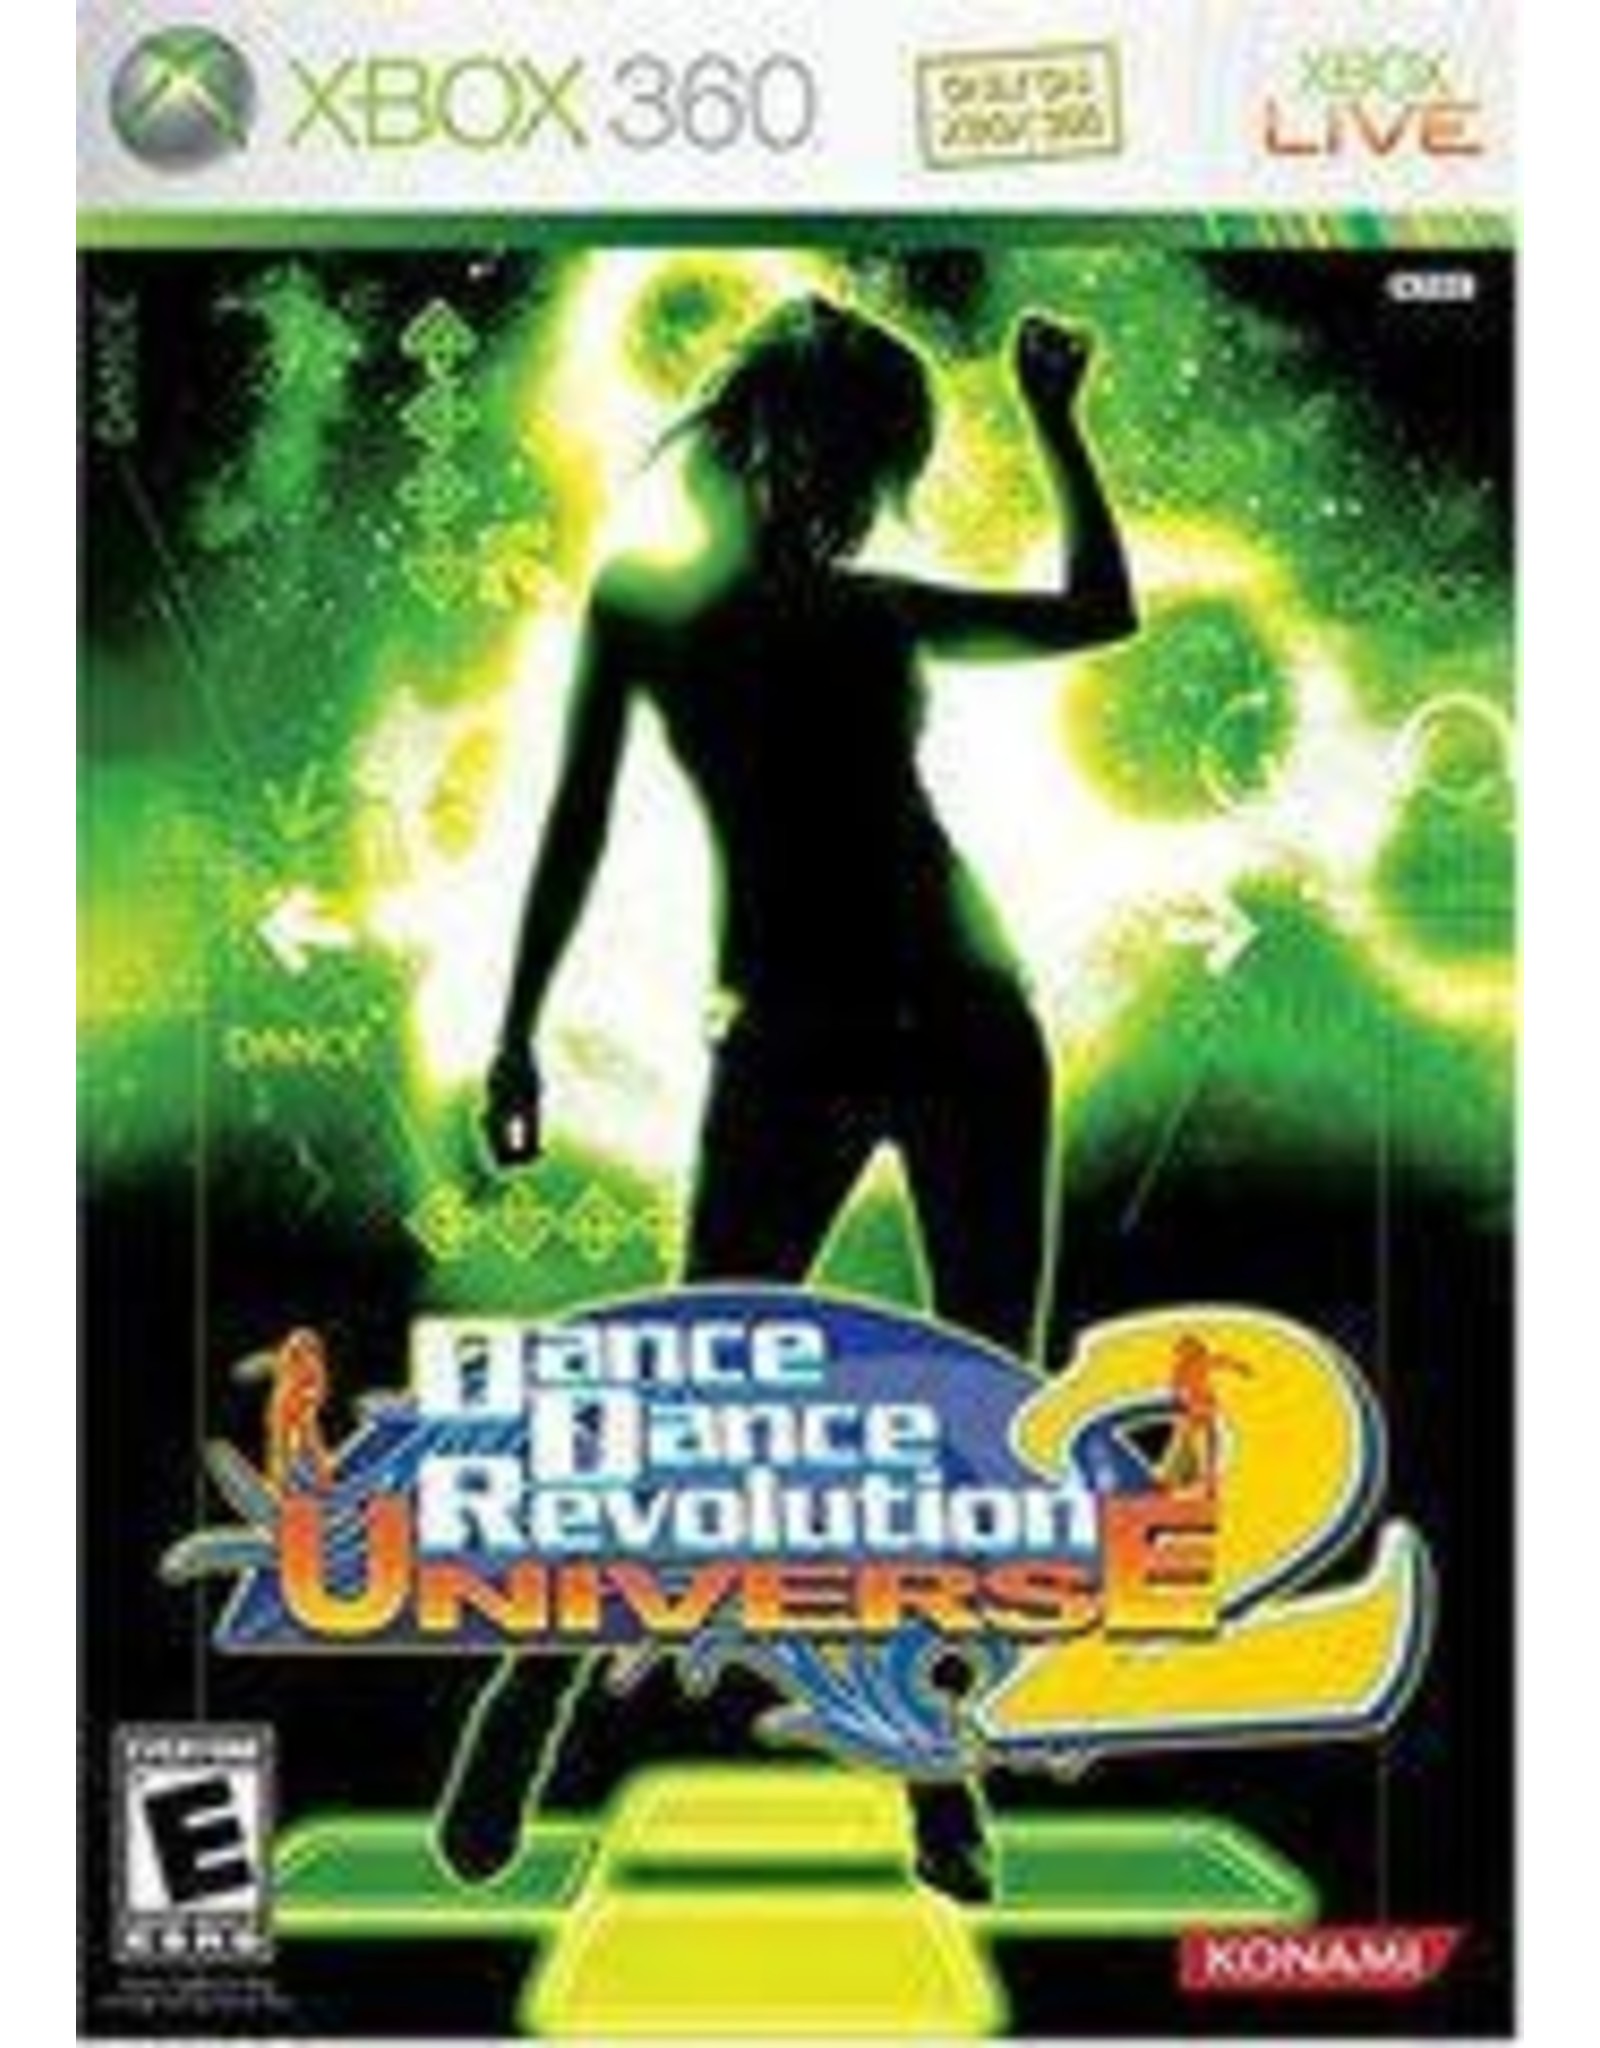 Xbox 360 Dance Dance Revolution Universe 2 (No Manual)